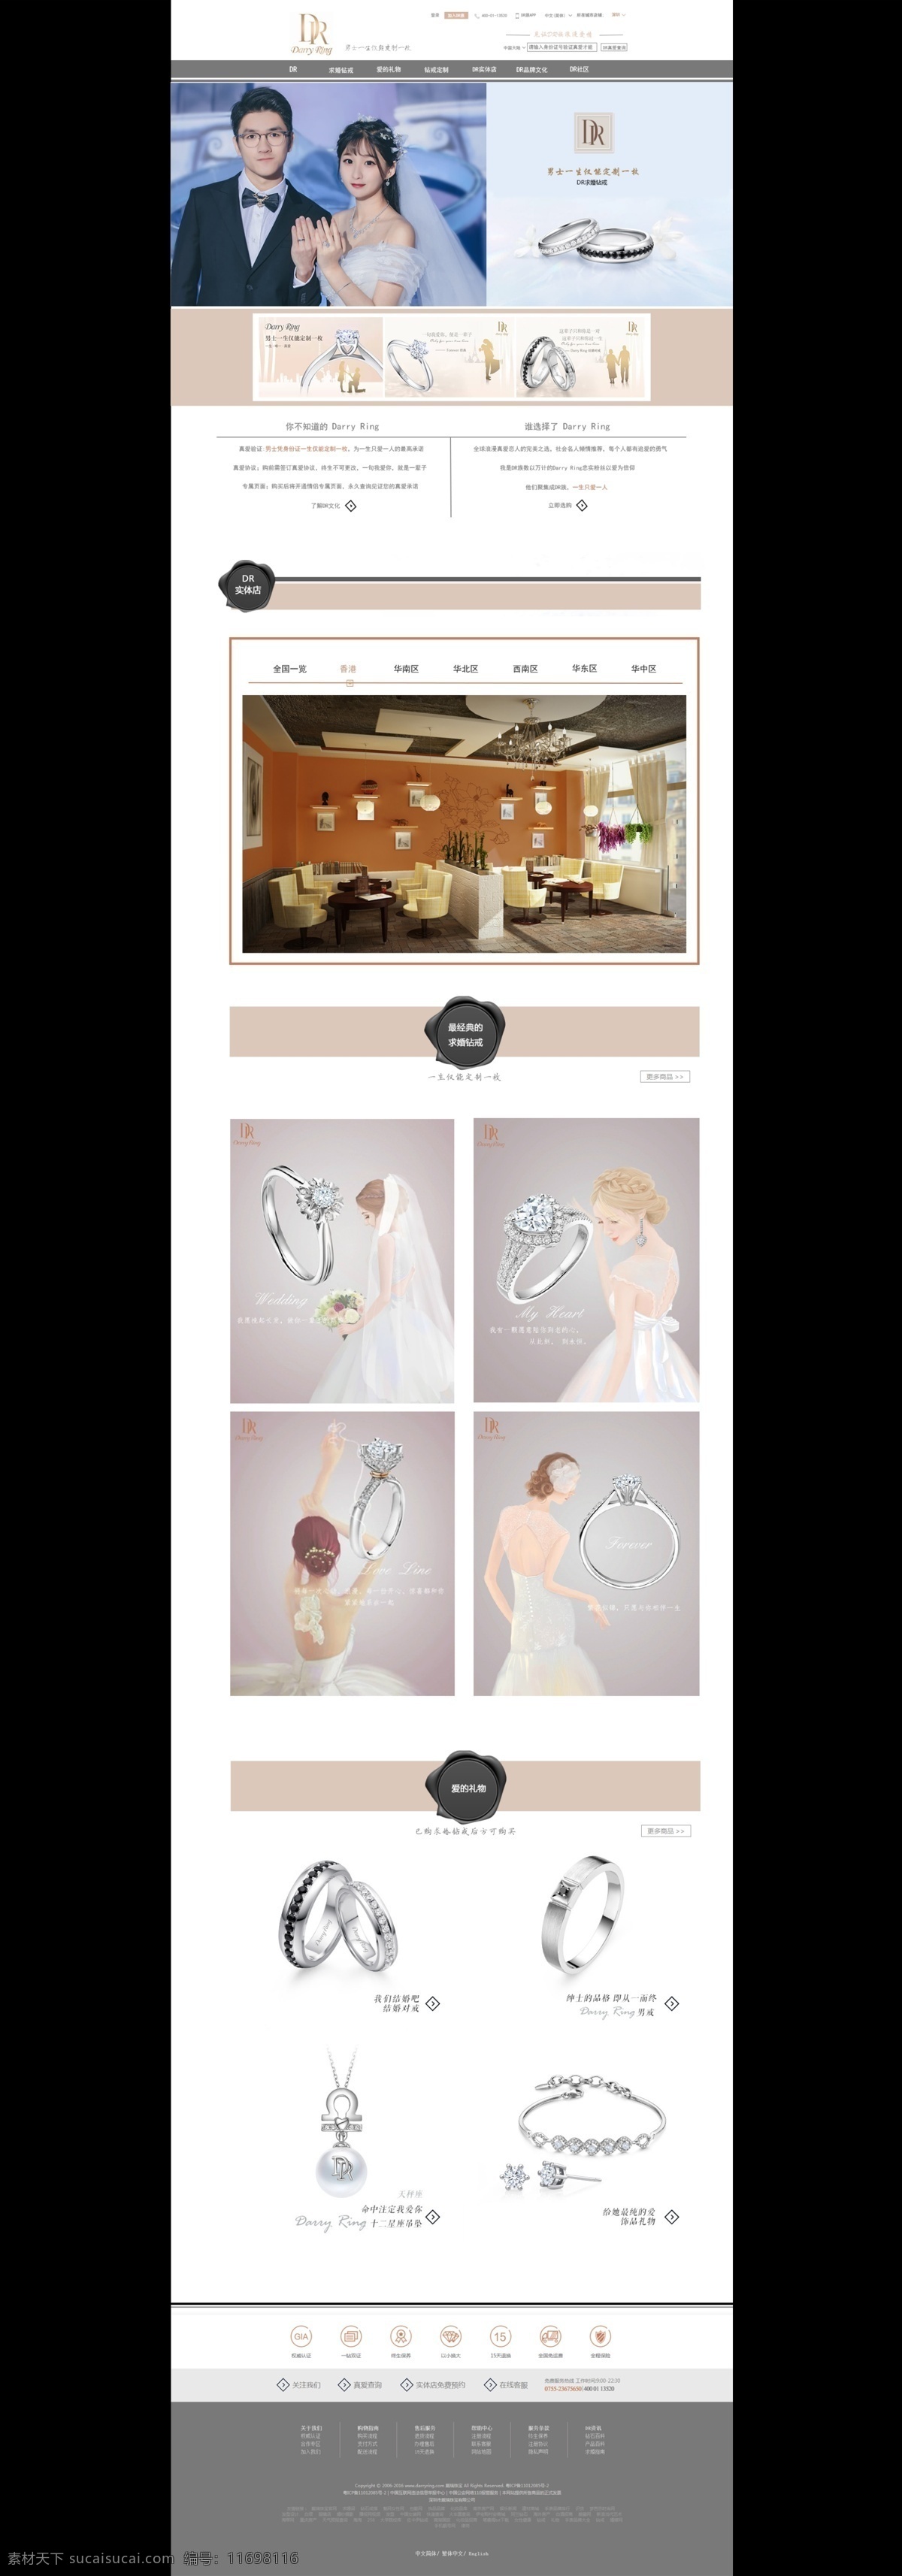 dr钻戒 dr 钻戒 结婚戒指 品牌 限量版 网站 网页 婚礼 结婚 求婚 相亲 web 界面设计 中文模板